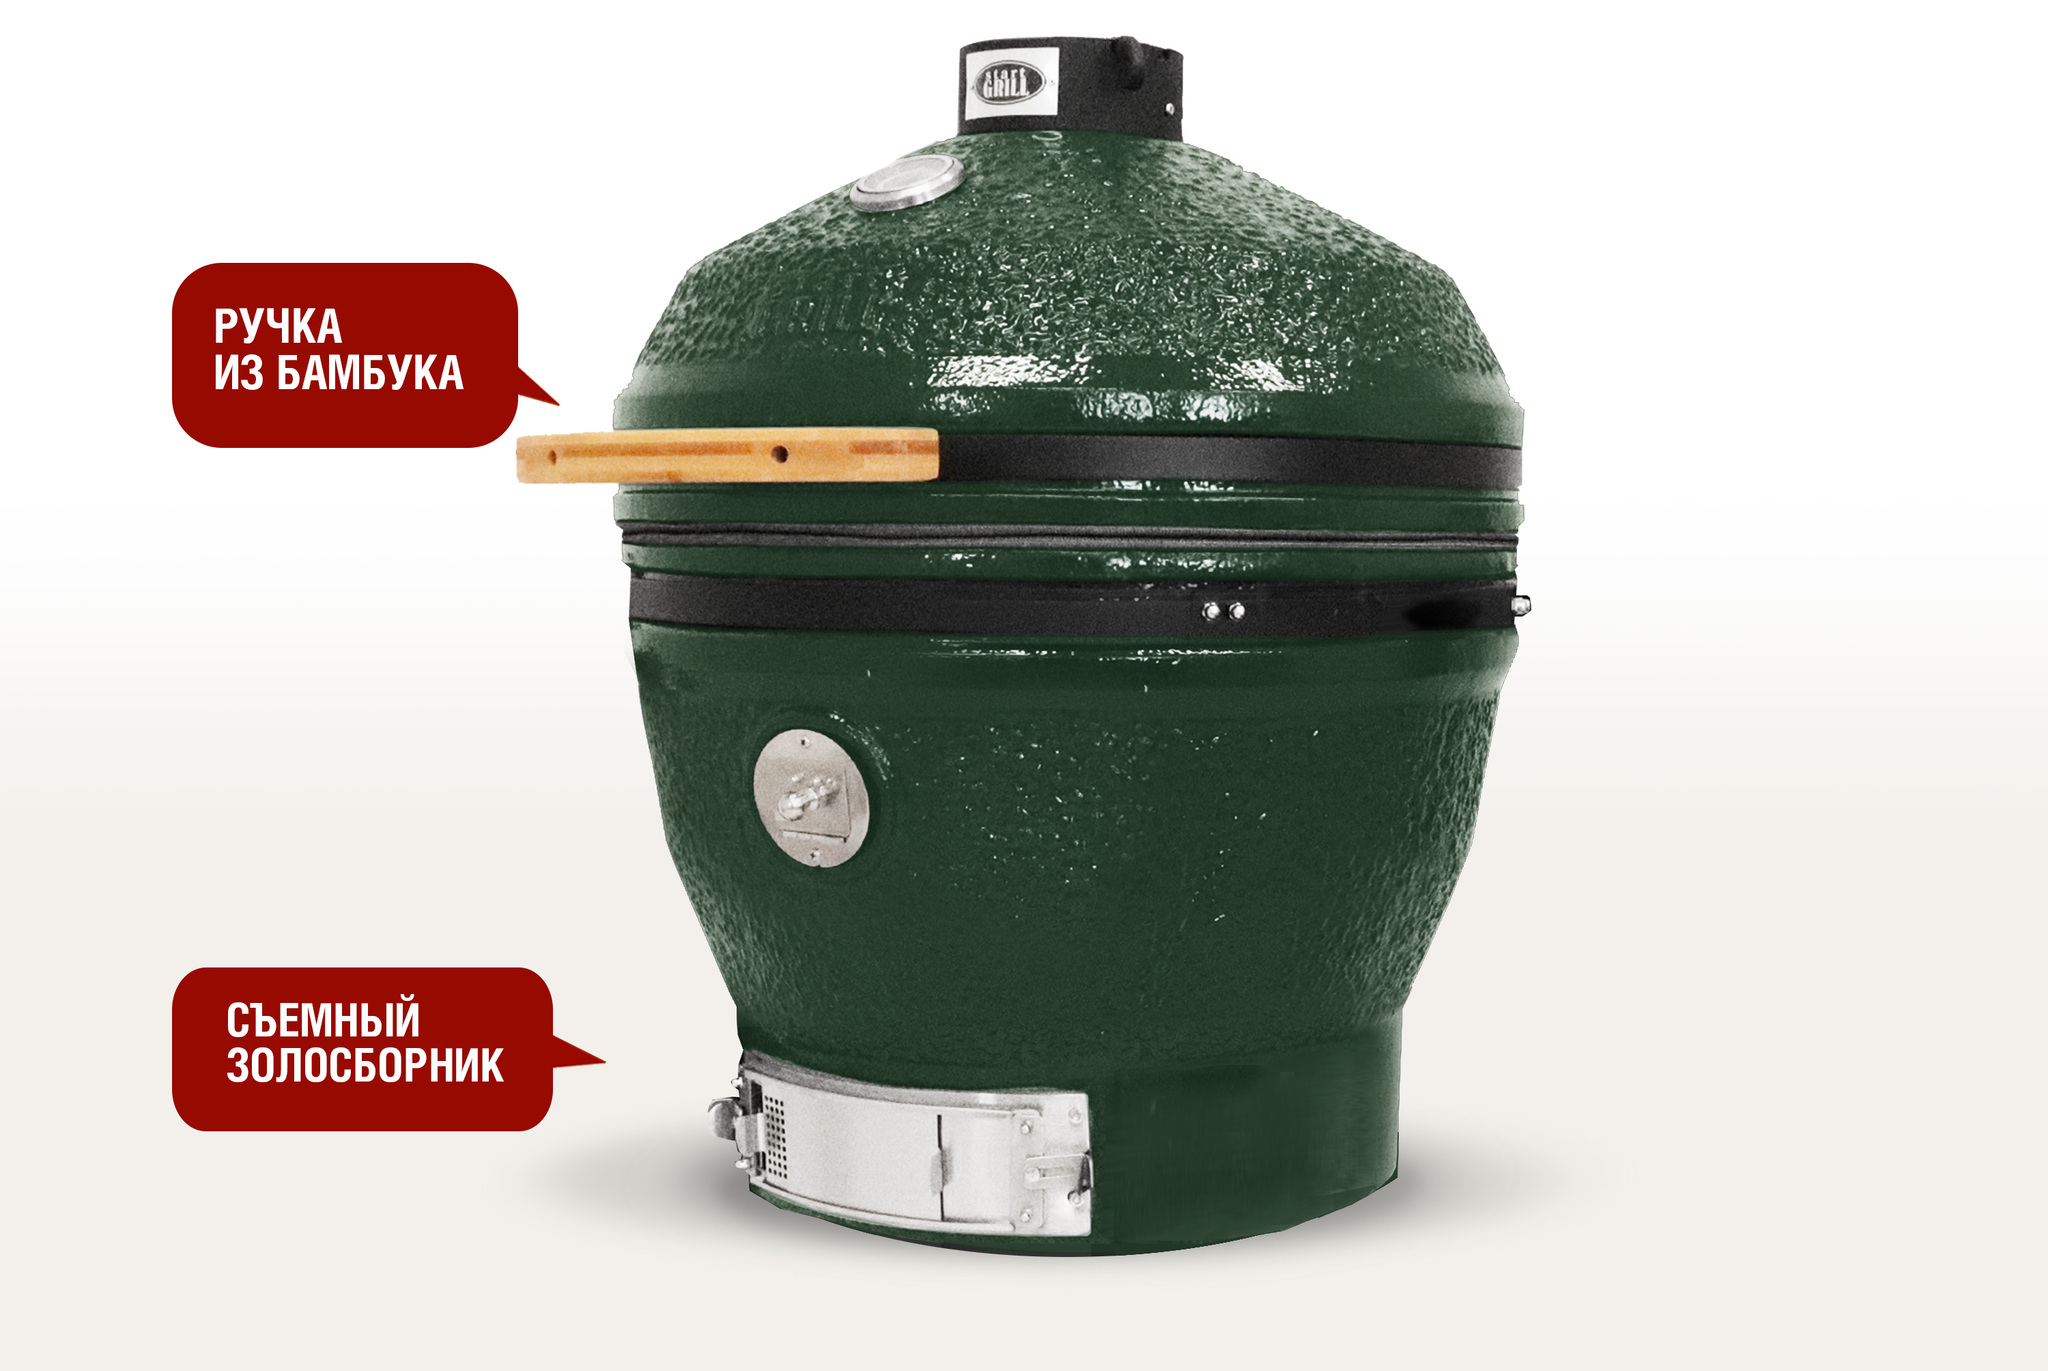 Керамический гриль-барбекю зеленый 24 дюйма / 61 см CFG CHEF в комплекте с модулем для гриля со столиками Артикул:  Фото №5